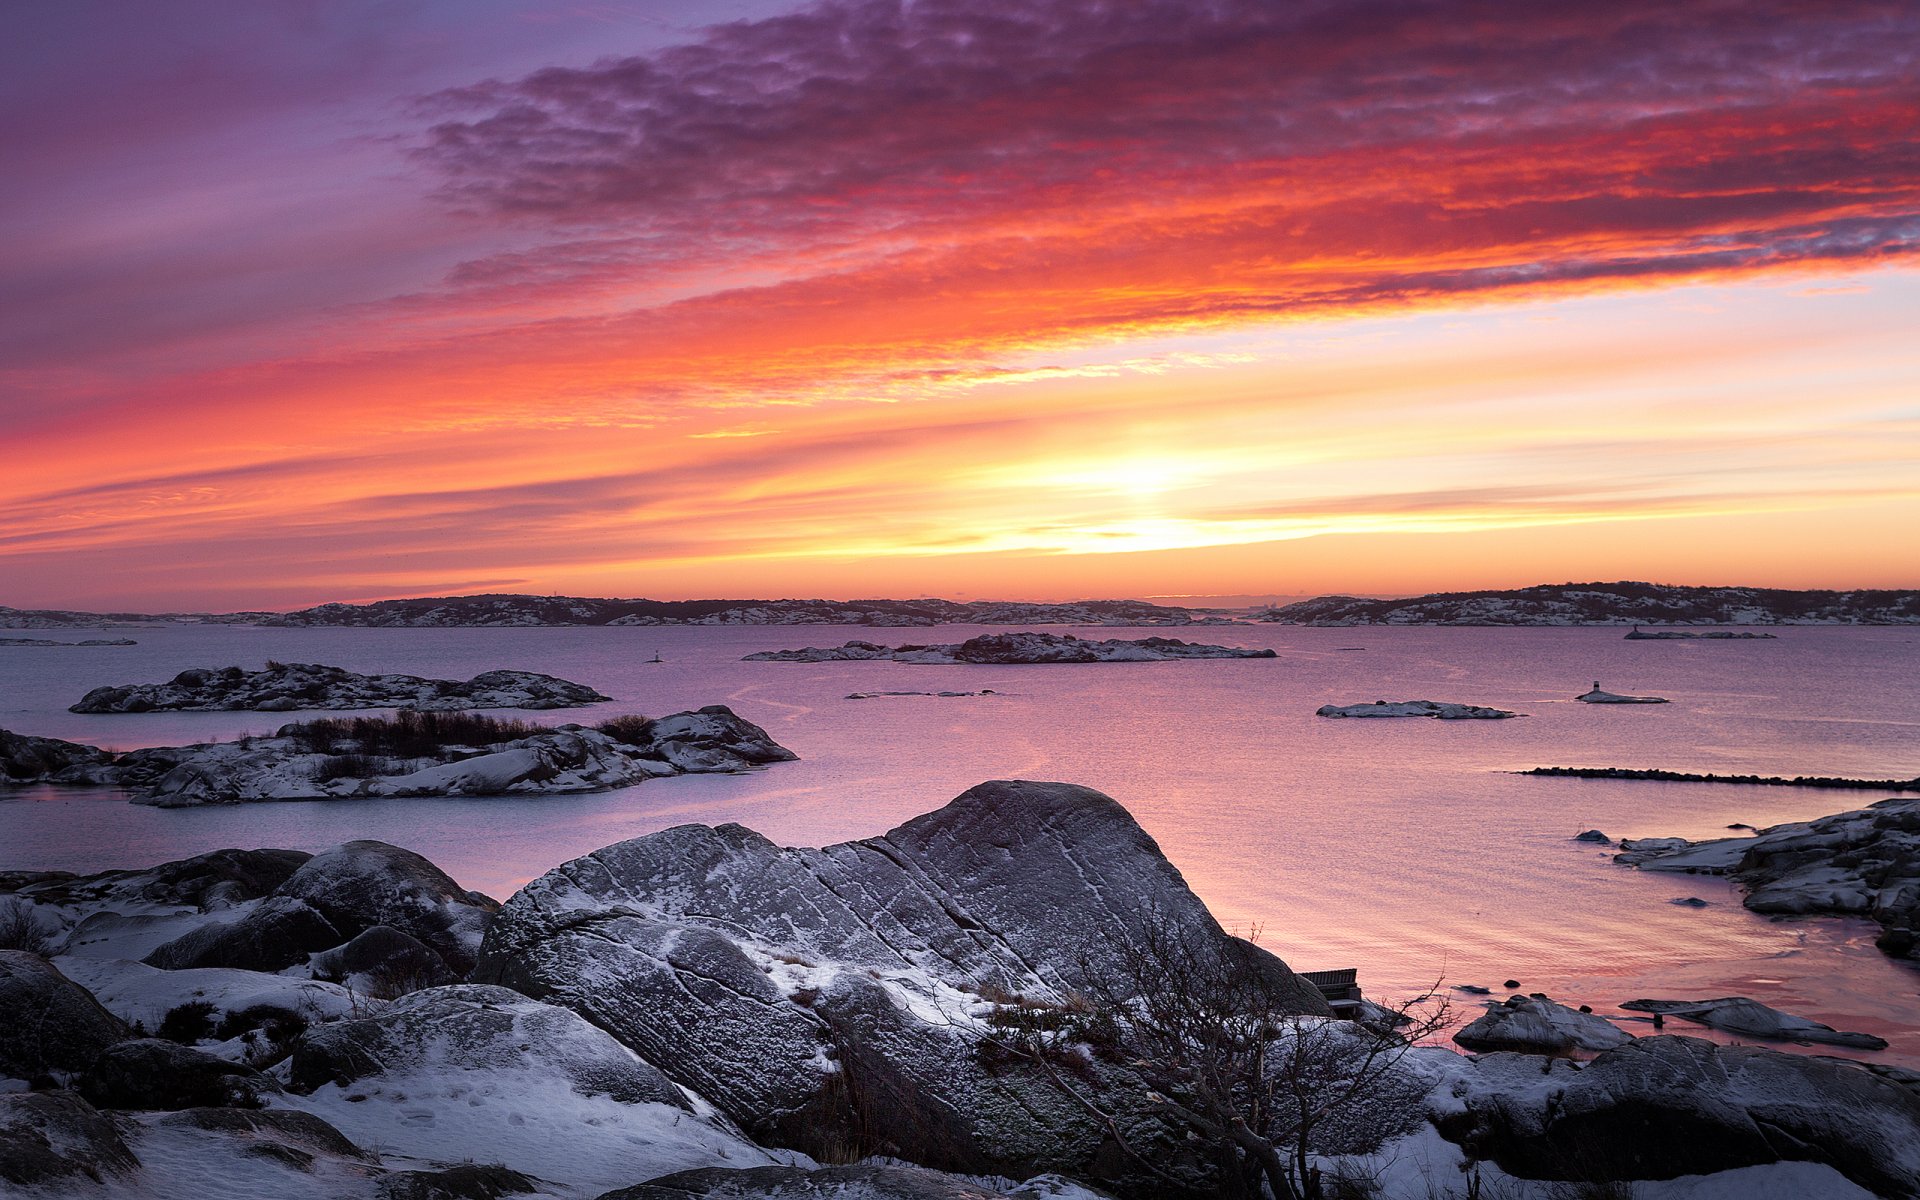 szwecja wieczór zachód słońca niebo chmury kamienie brzeg śnieg morze